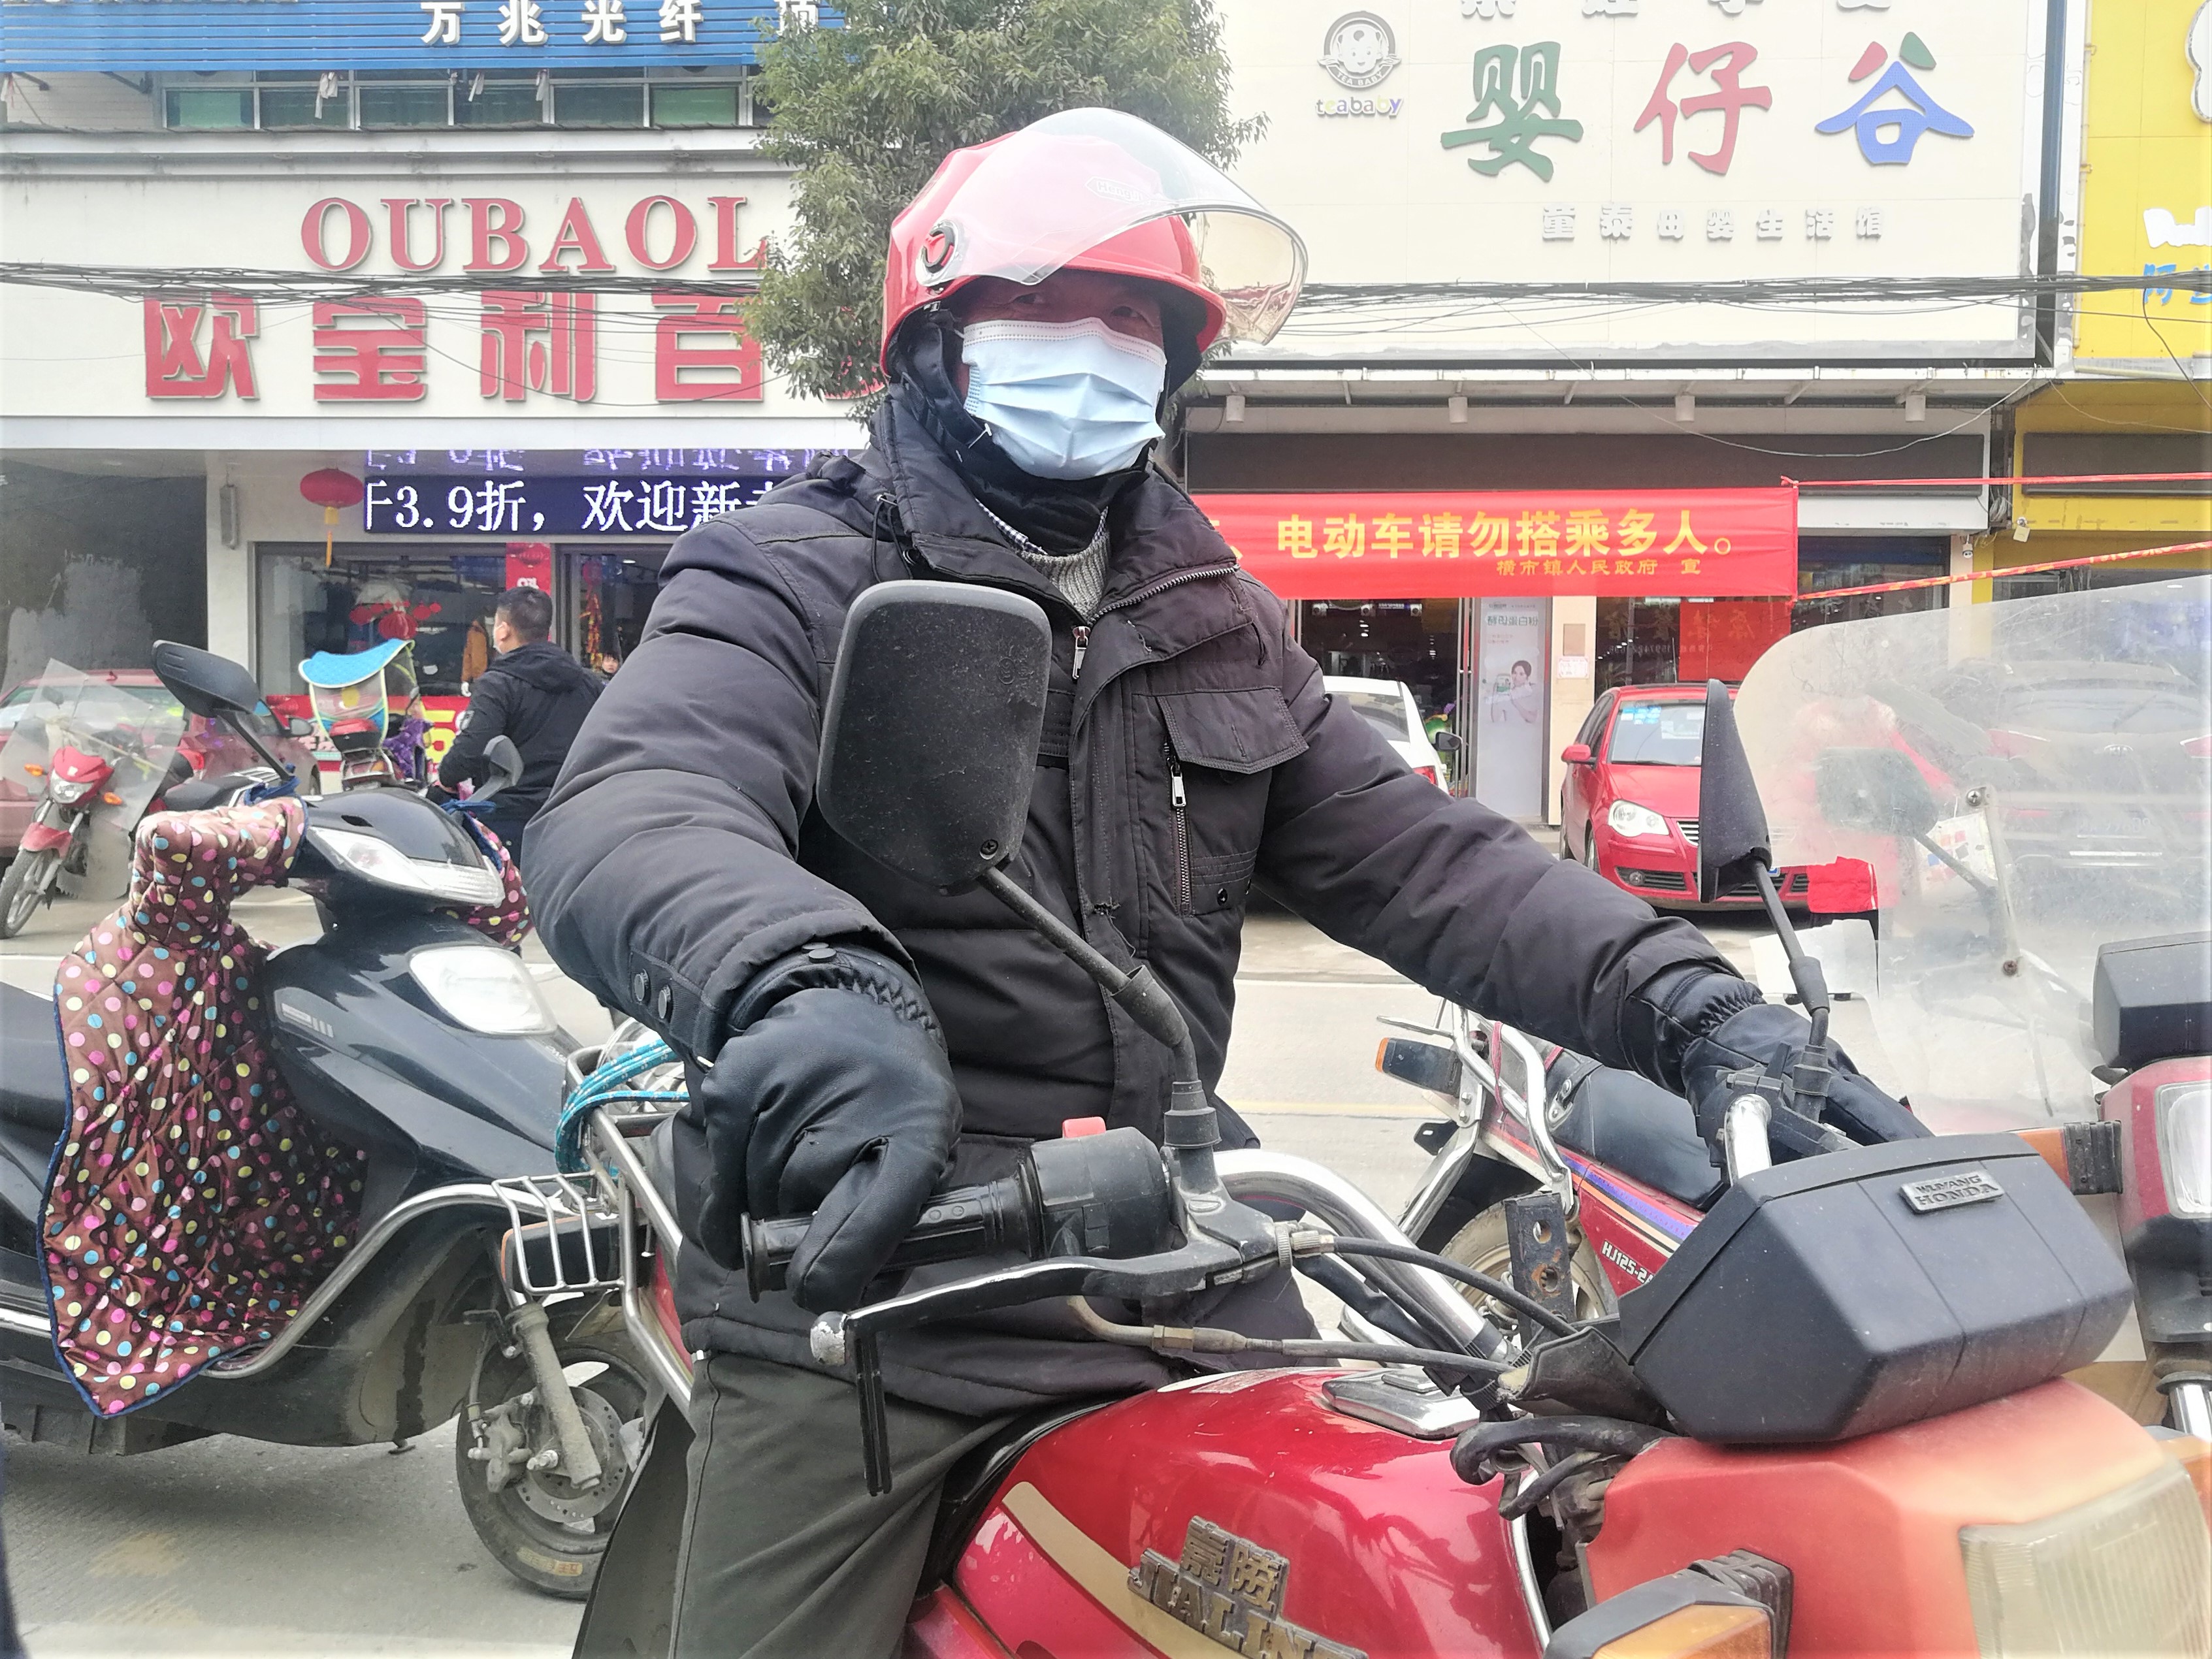 64岁的秦桂良是横市镇云山村村民，他十分开心地戴上免费领取的红色摩托车头盔。长沙晚报全媒体记者 张禹 摄